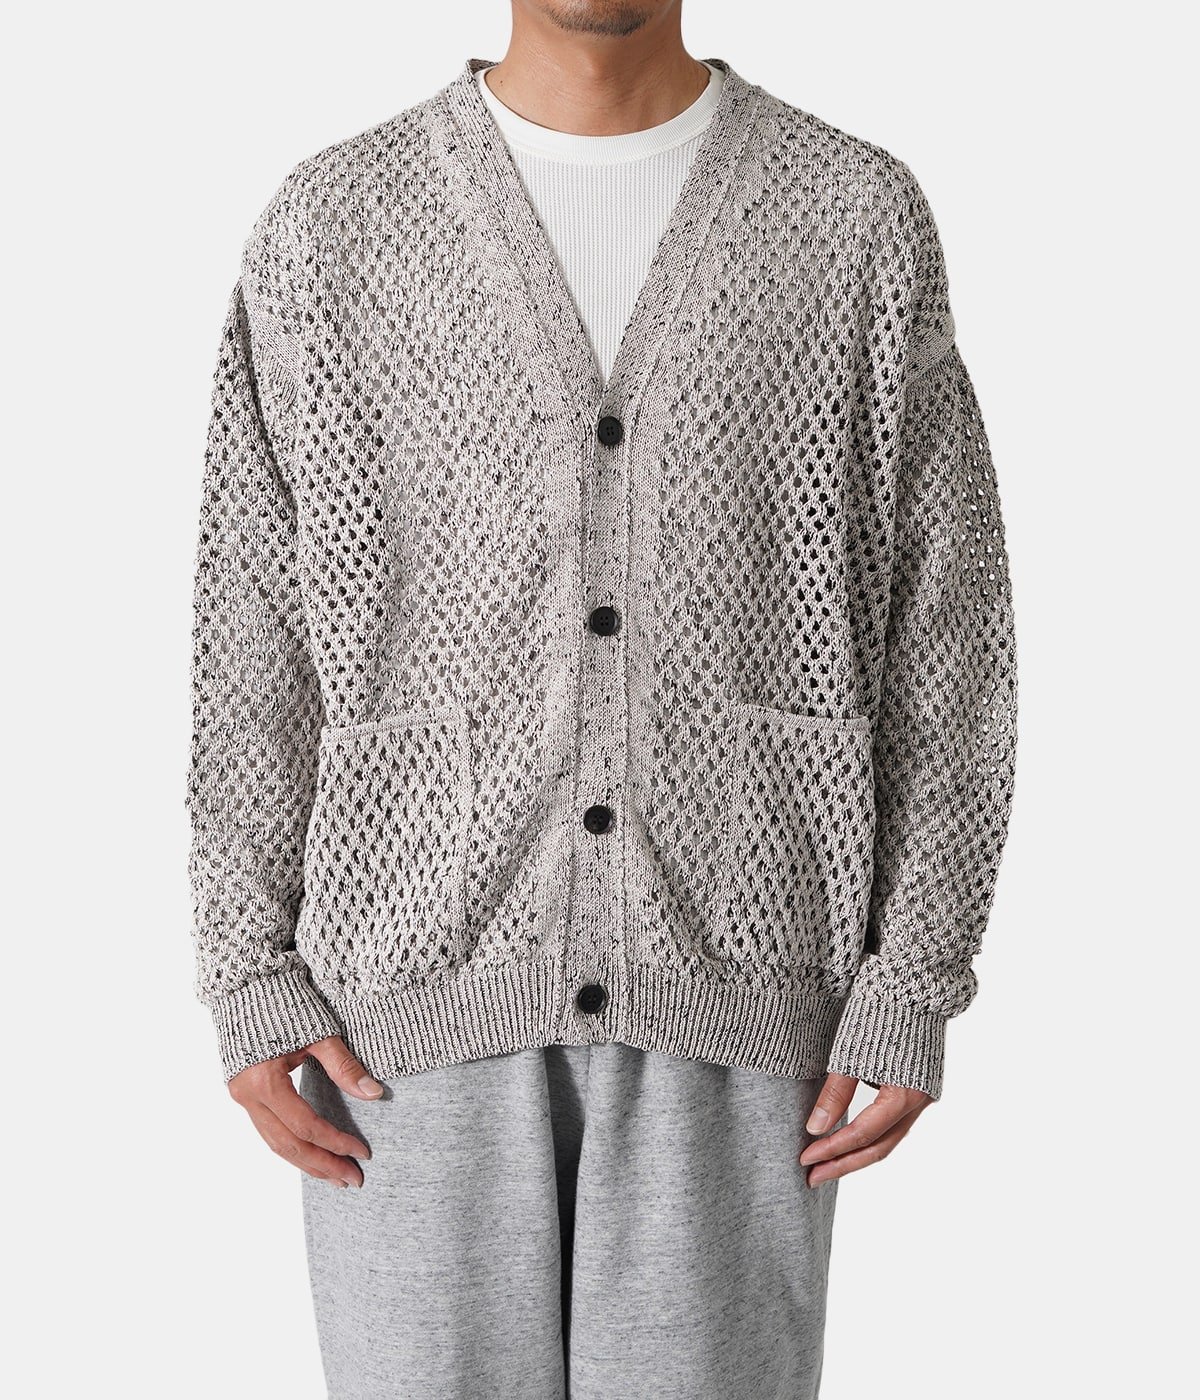 17200円本店 セール アウトレット店舗 Yoke meshed knit cardigan 22ss